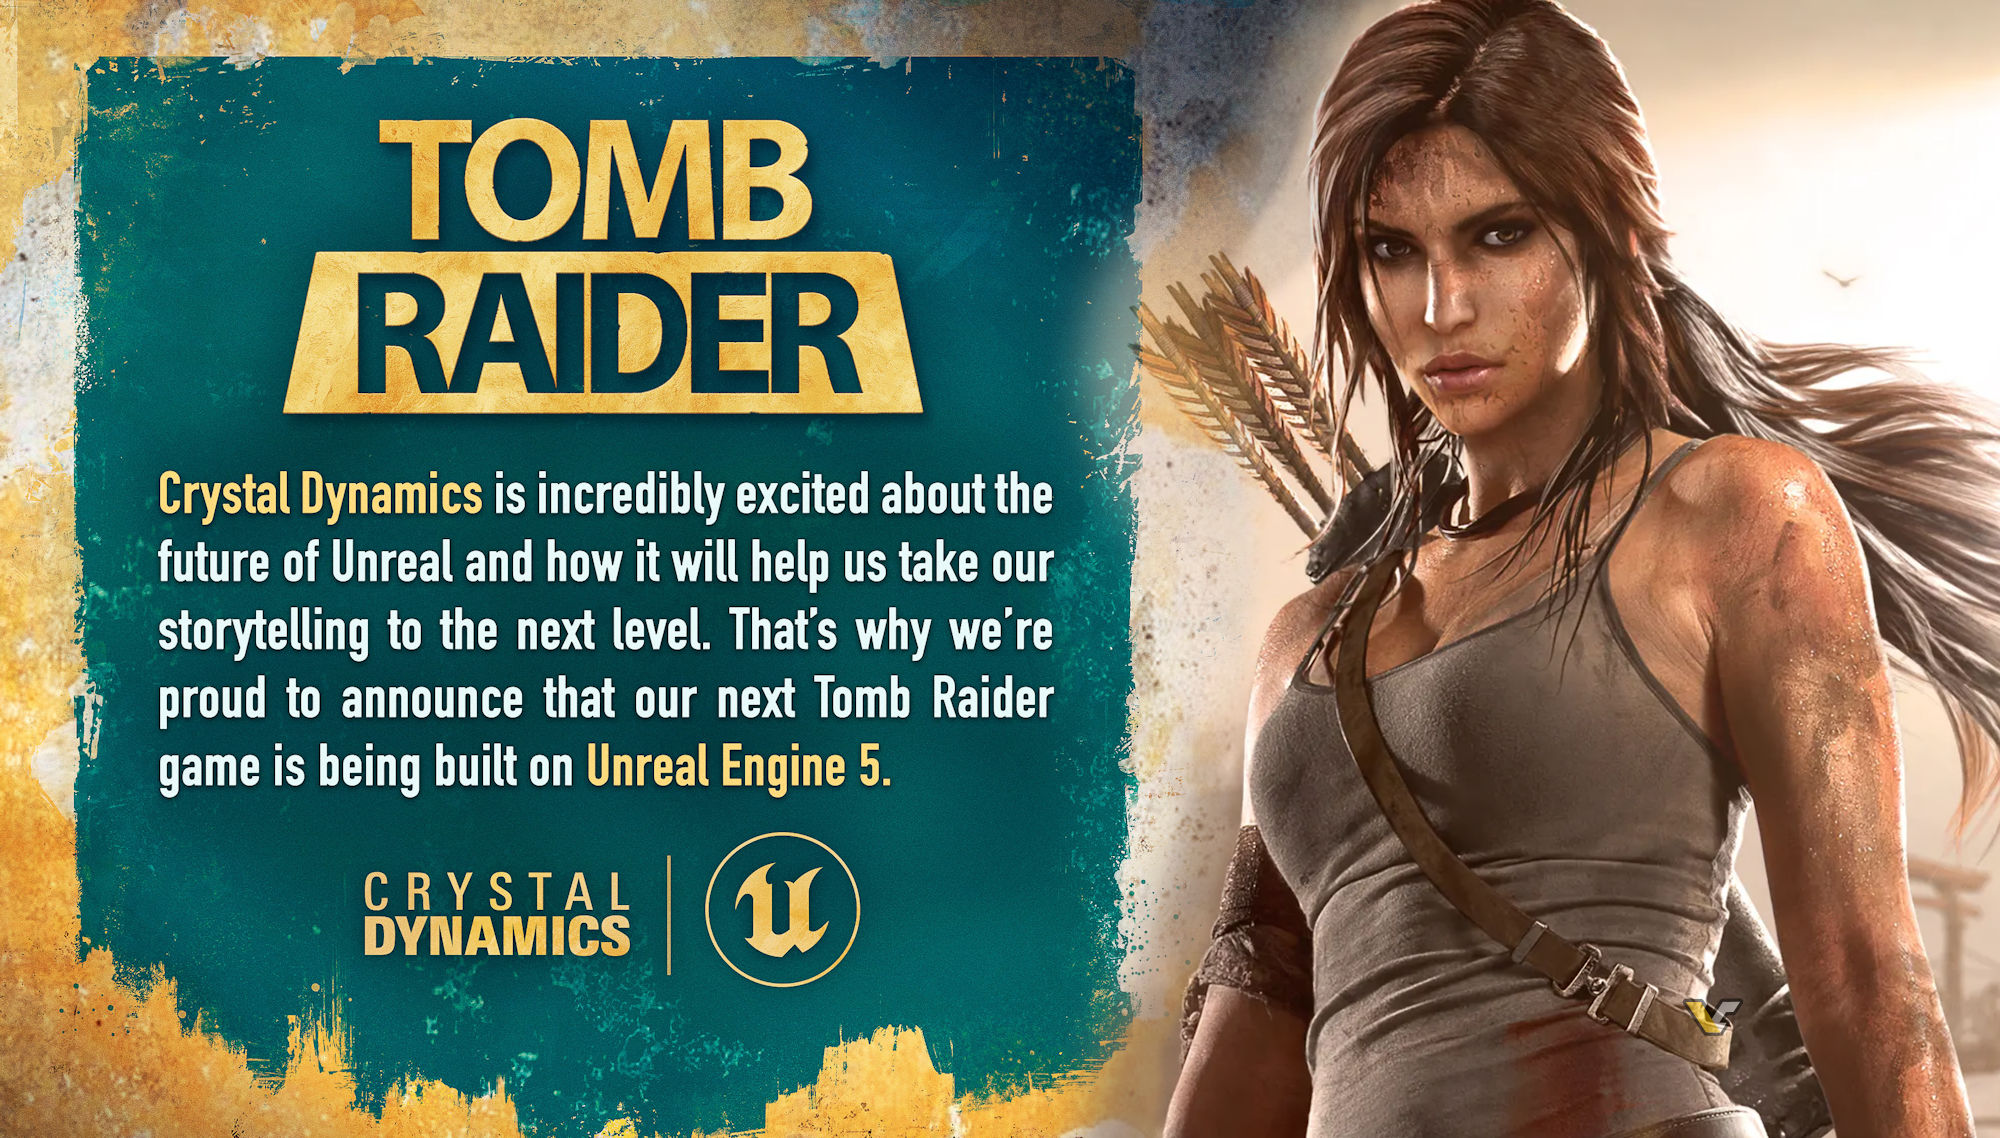 Tomb Raider UE5 hero 1 - ساخت عنوان بعدی بازی Tomb Raider تایید شد